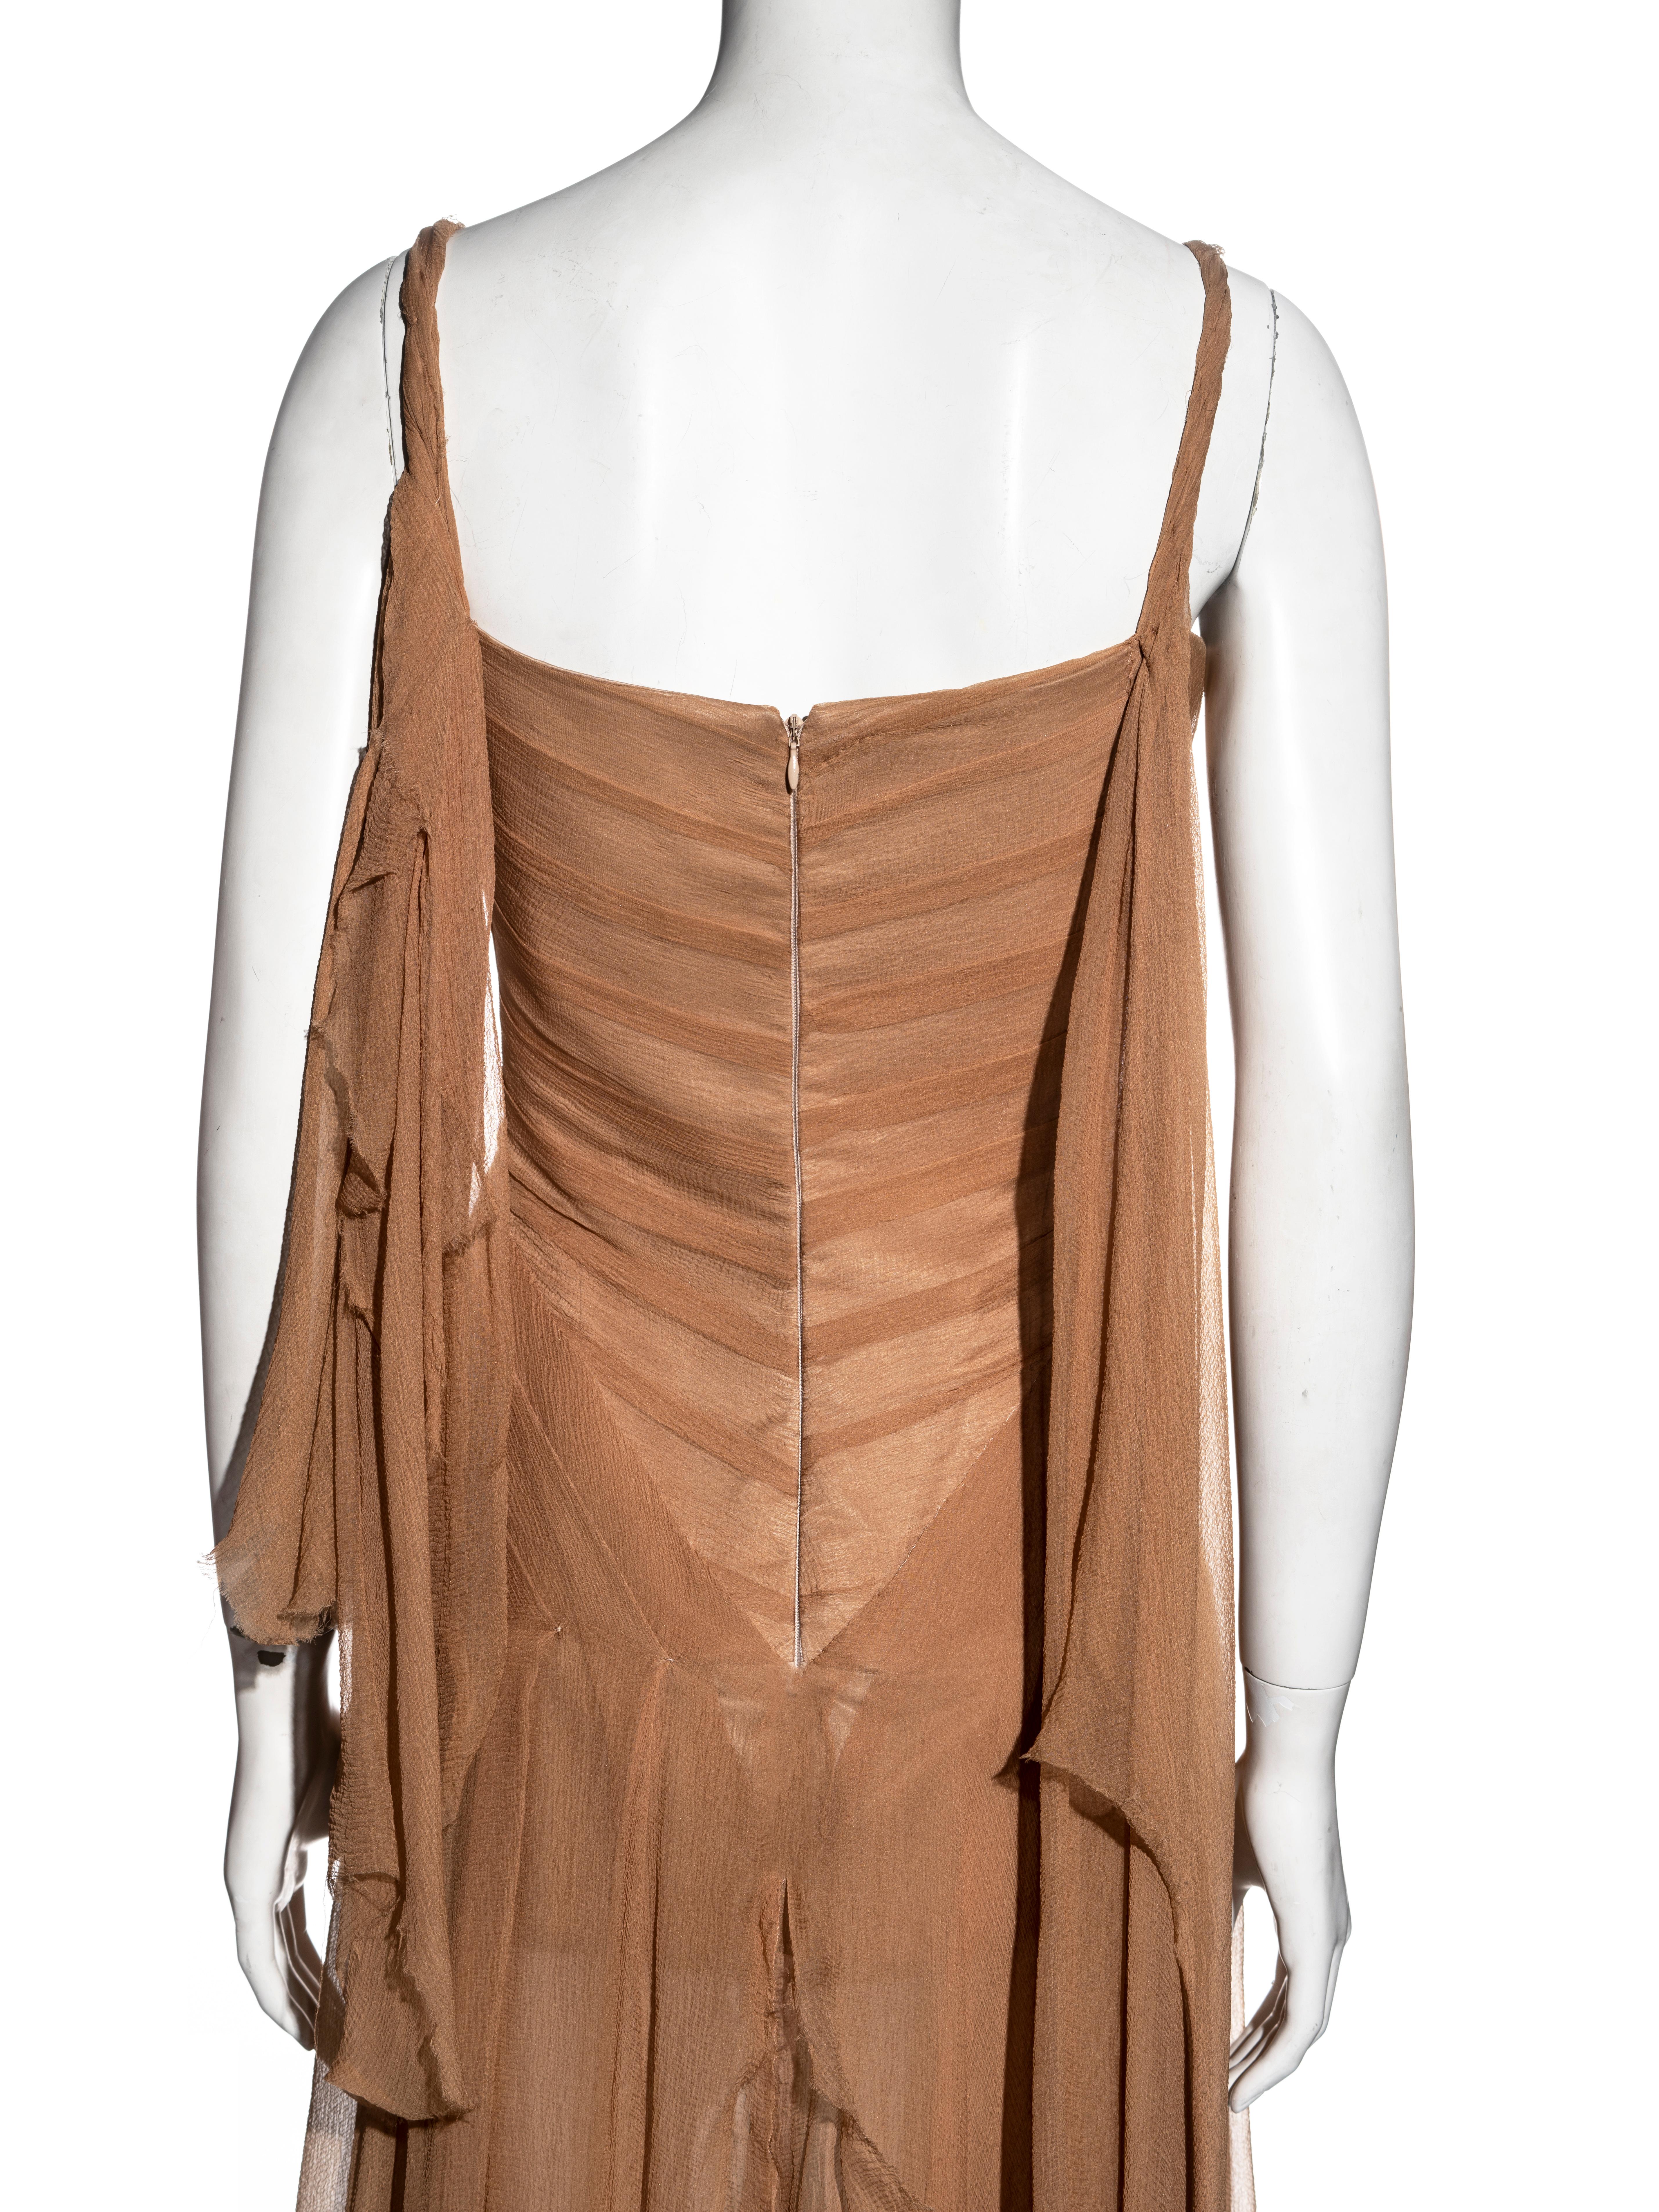 Alexander McQueen nude silk chiffon shipwreck evening dress, ss 2003 For Sale 4